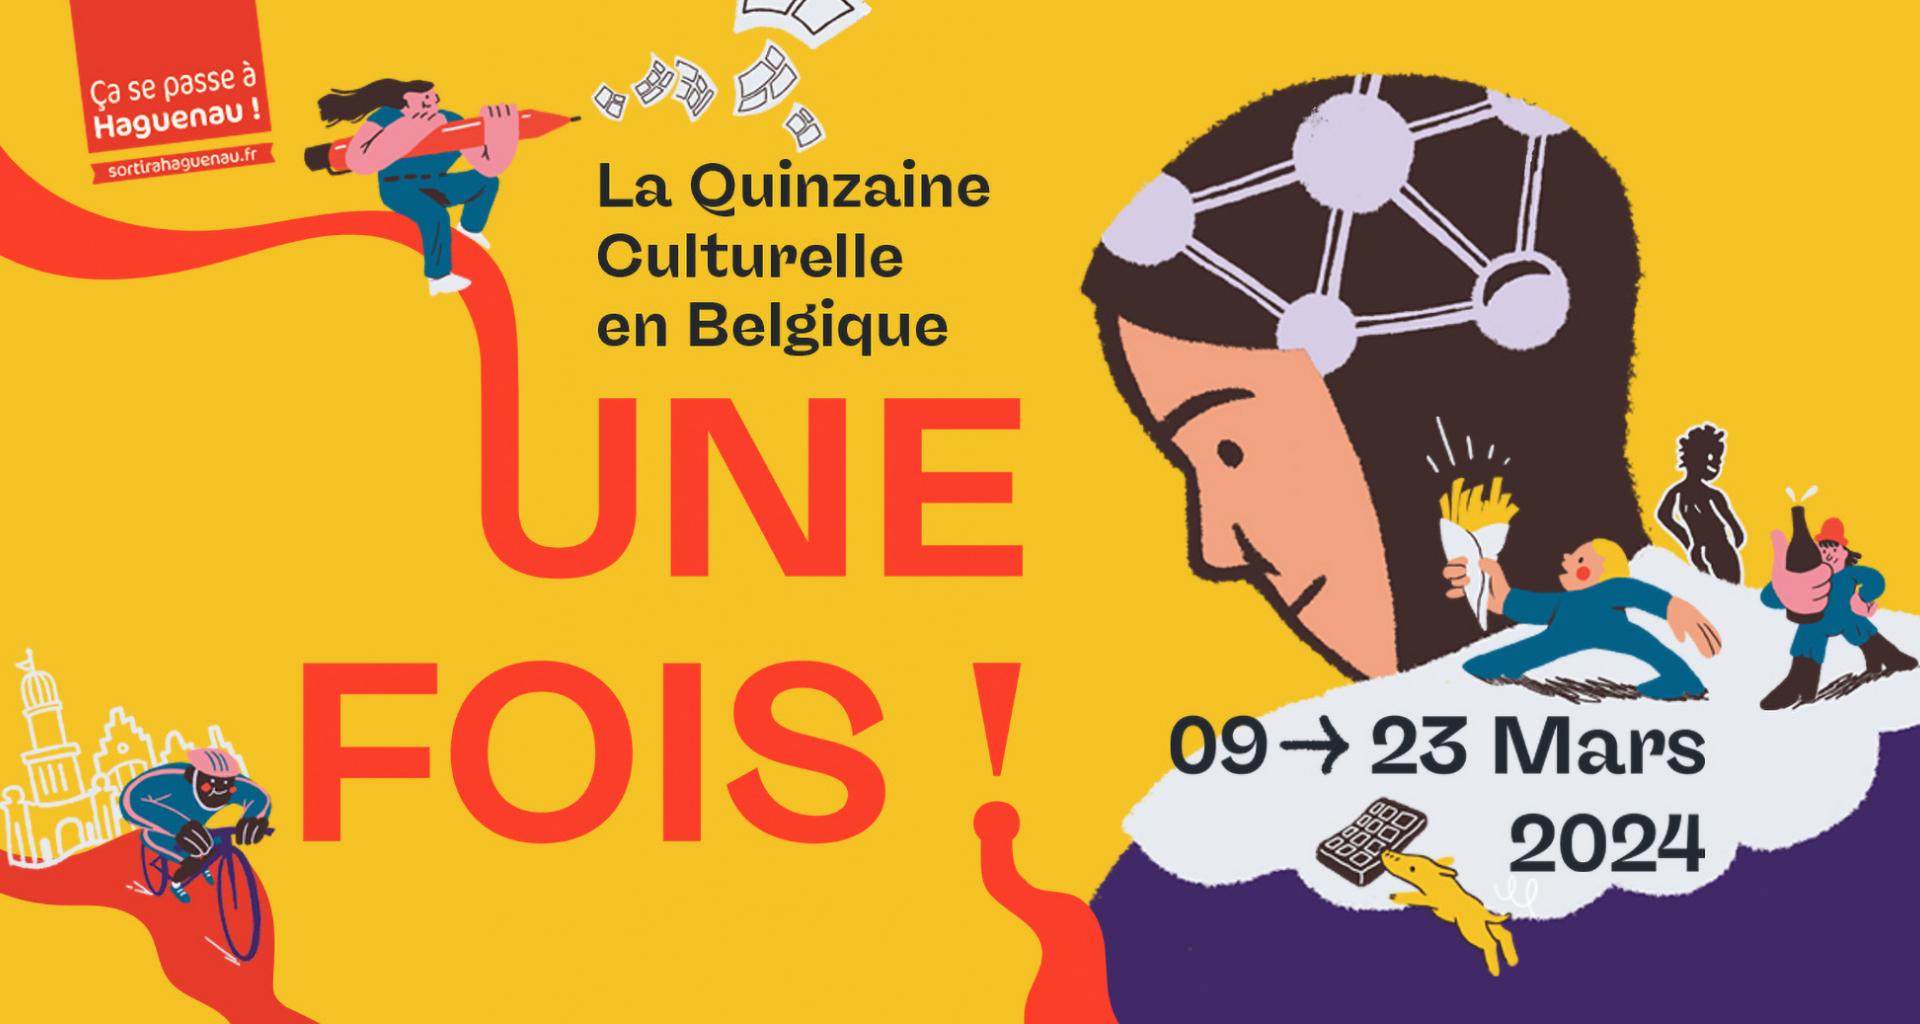 La Quinzaine Culturelle en Belgique